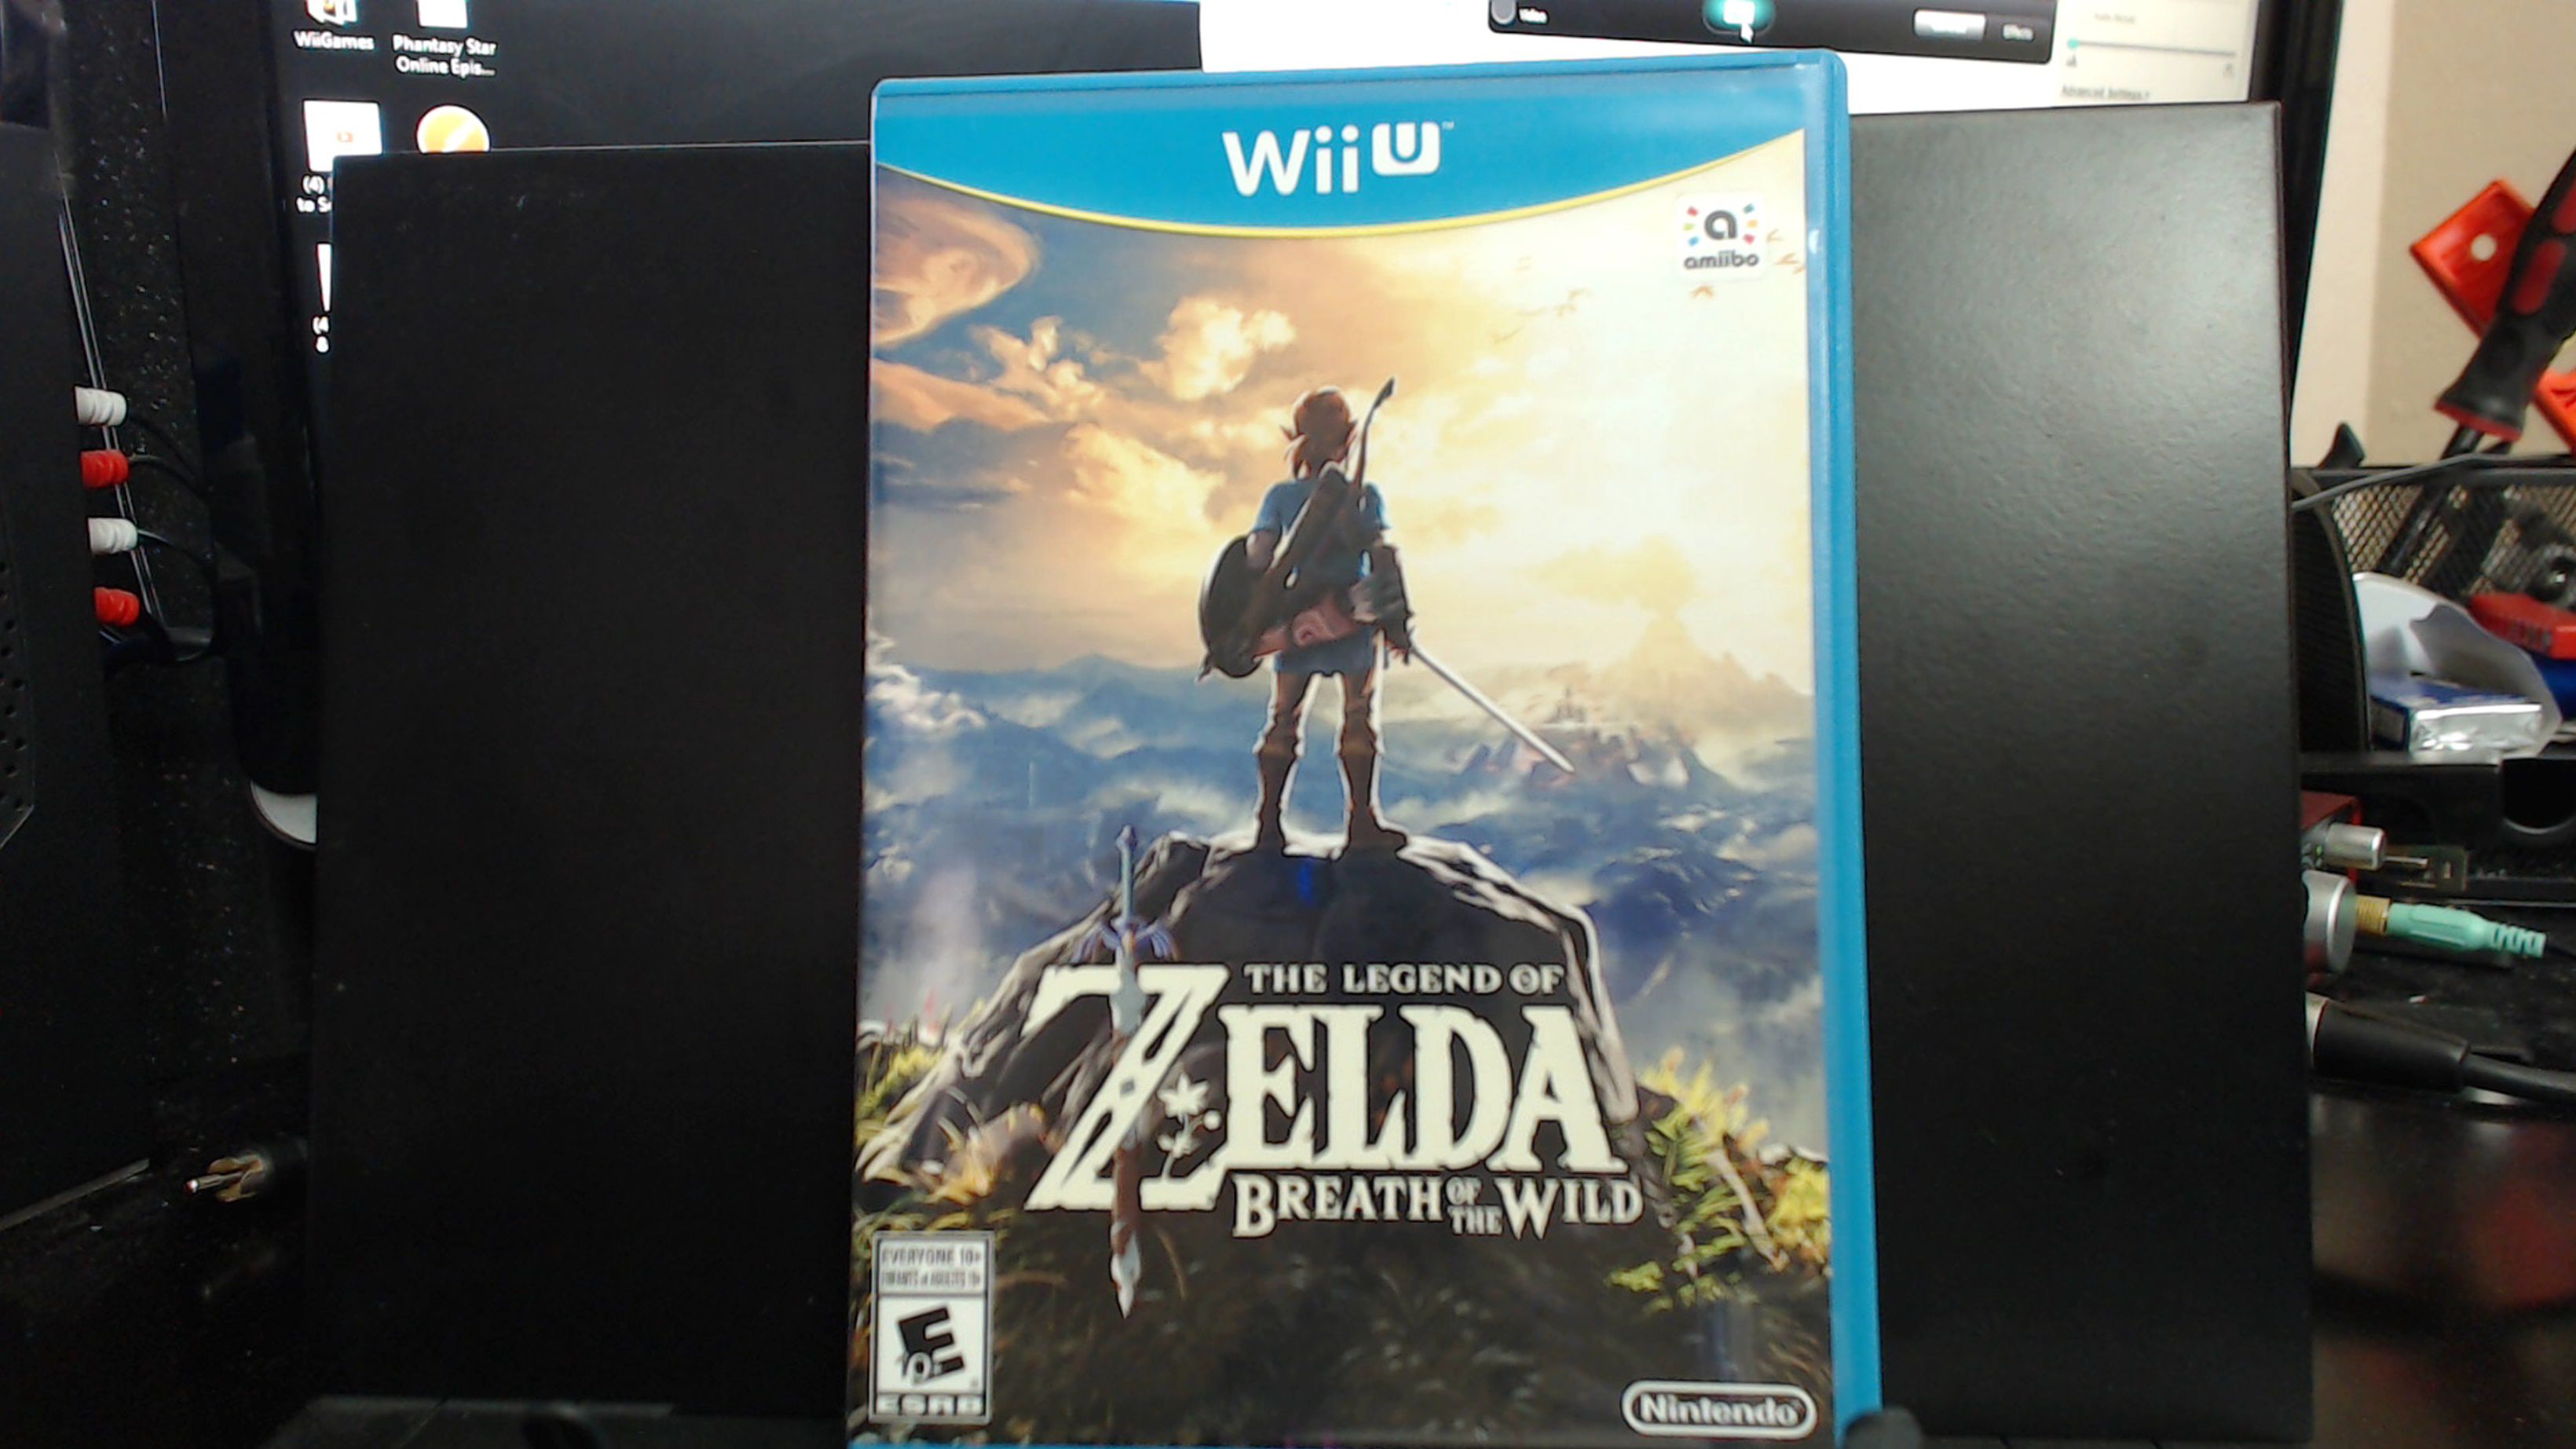 The Legend of Zelda Breath of the Wild for Nintendo Wii U